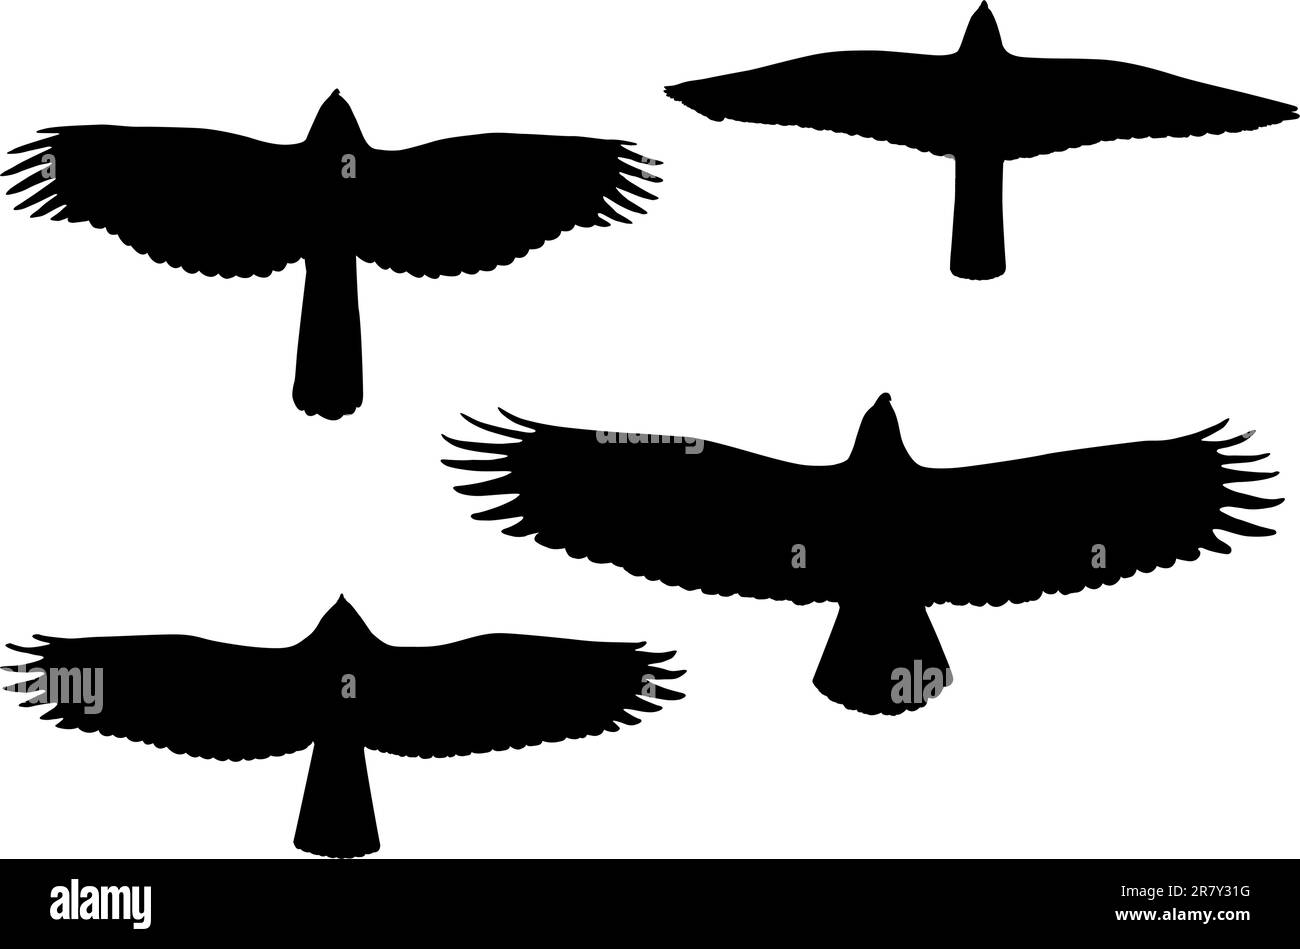 Les oiseaux de prier silhouettes. Vecteur eps8 Illustration de Vecteur